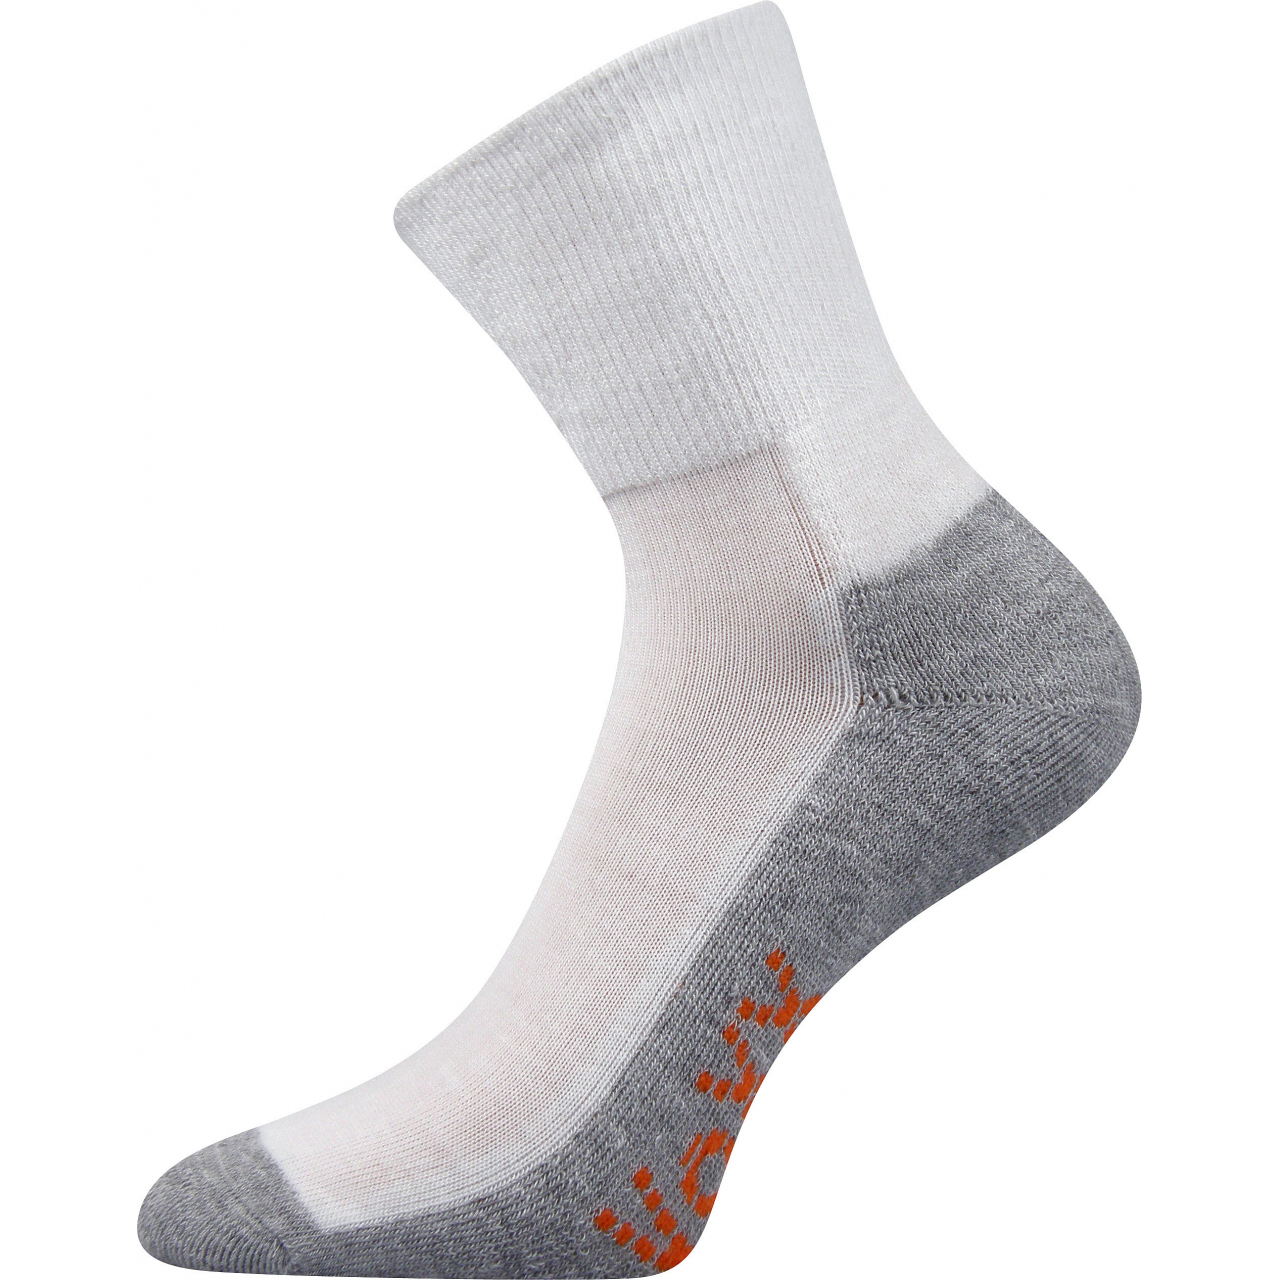 Ponožky sportovní Voxx Vigo CoolMax - bílé-šedé, 35-38